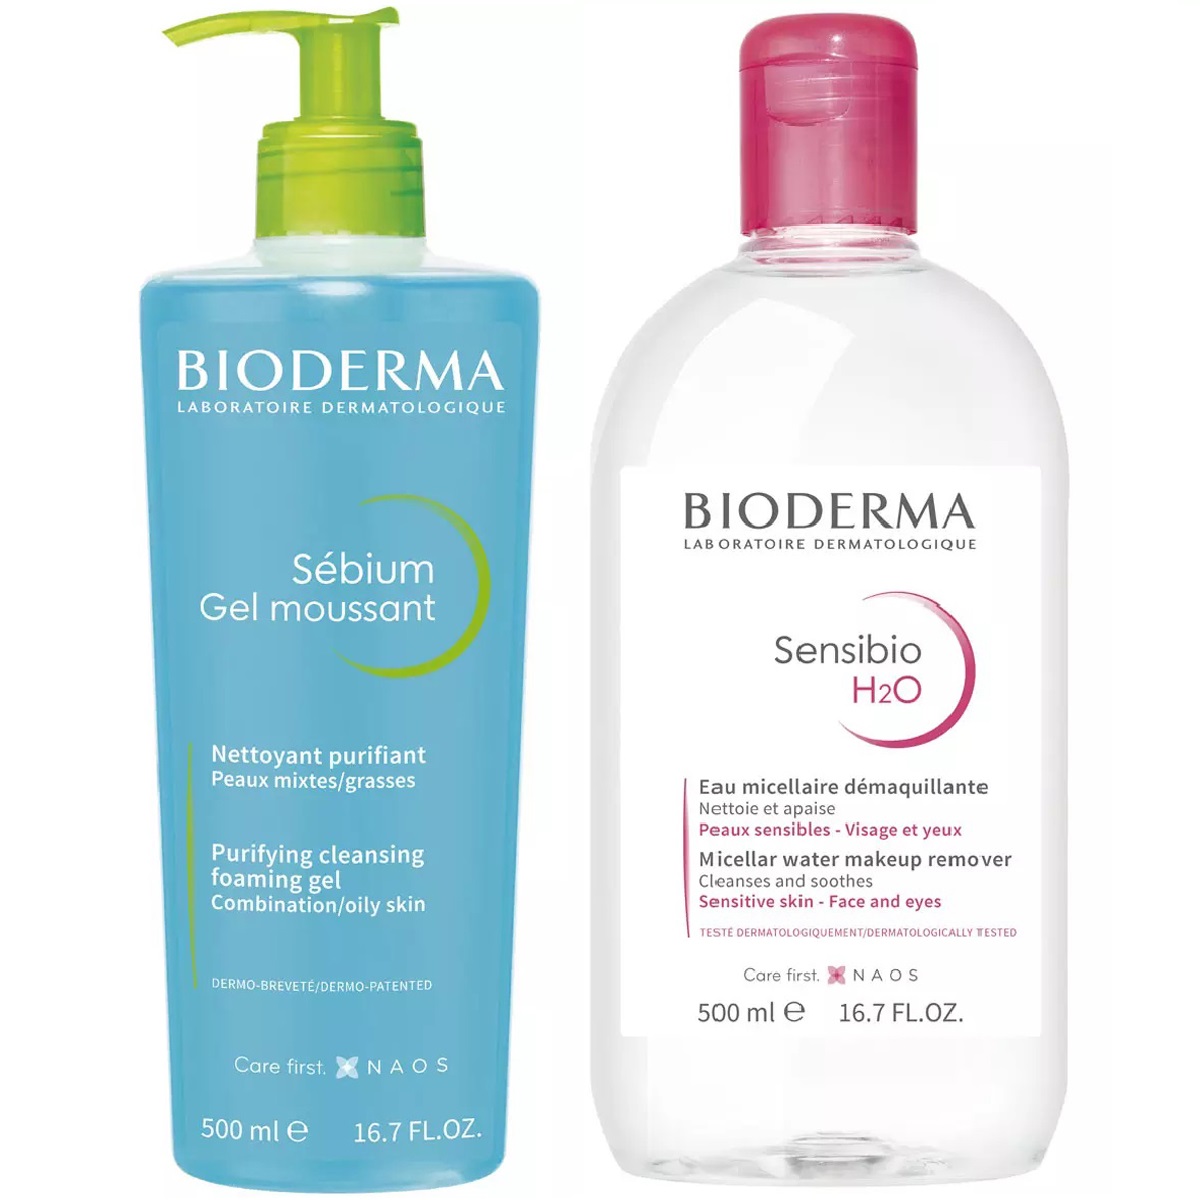 Bioderma Набор для очищения жирной кожи: гель, 500 мл + мицеллярная вода, 500 мл (Bioderma, Sebium) bioderma набор для очищения жирной кожи гель 500 мл лосьон 200 мл bioderma sebium